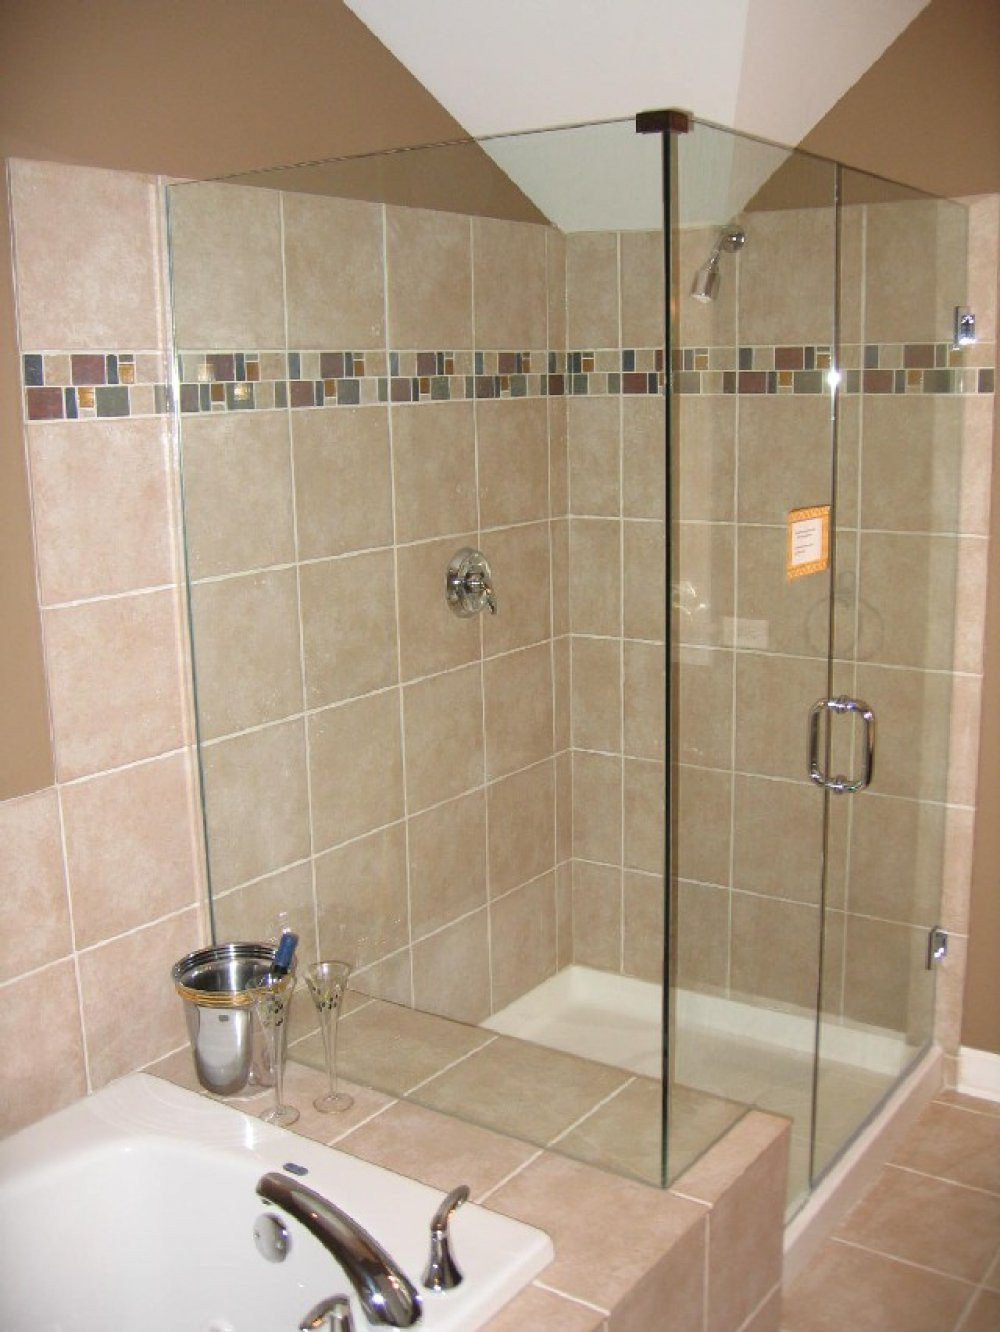 Bathroom Shower Tile Gallery
 Bathroom Tile Ideas for Shower Walls Decor IdeasDecor Ideas